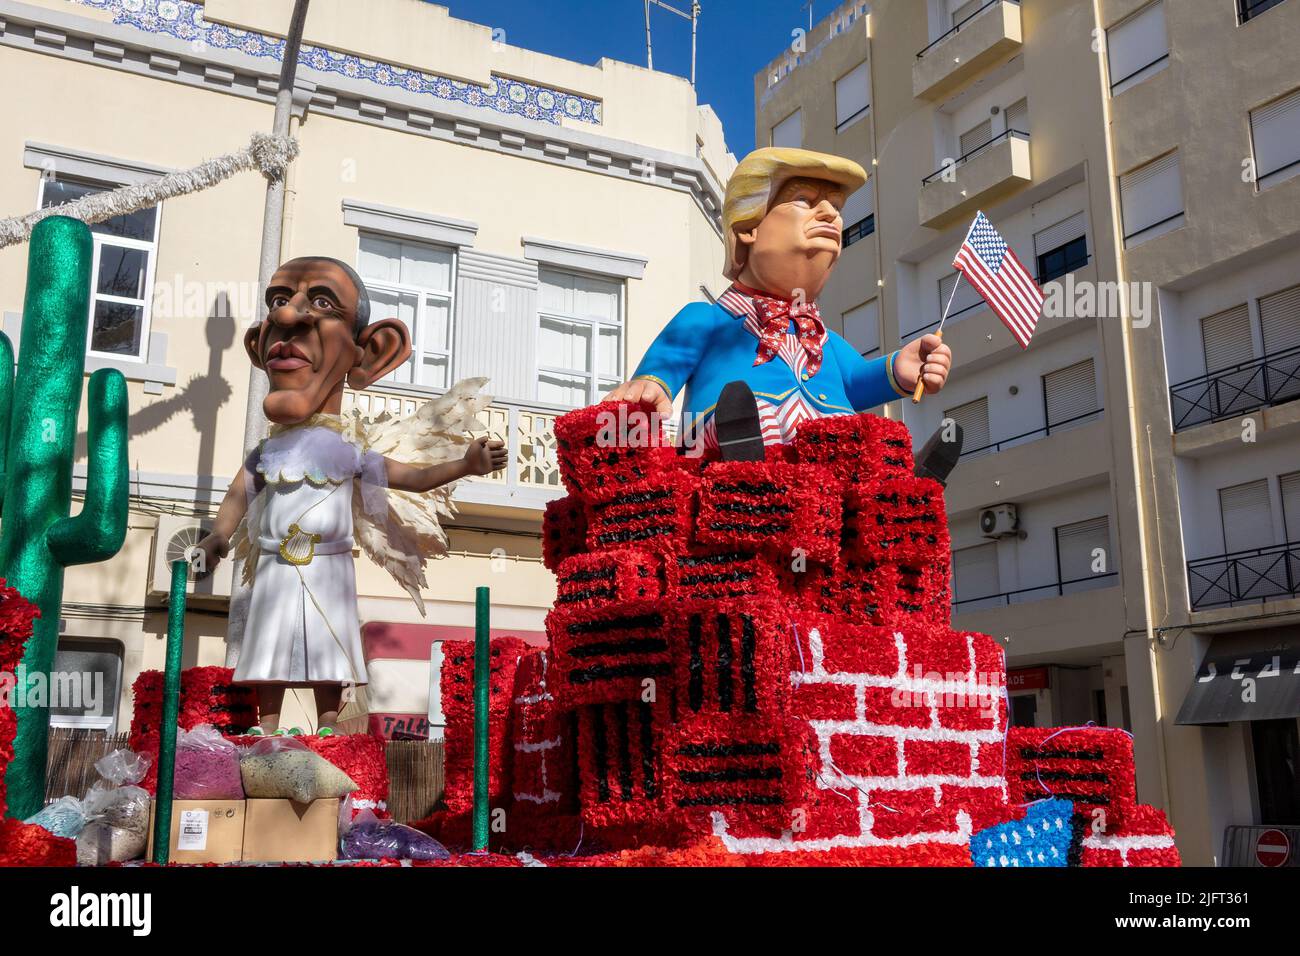 12 DE FEBRERO de 2018, LOULE, PORTUGAL: Flotación de Carnaval con Donald Trump Tema de la construcción De un muro en la frontera mexicana Foto de stock